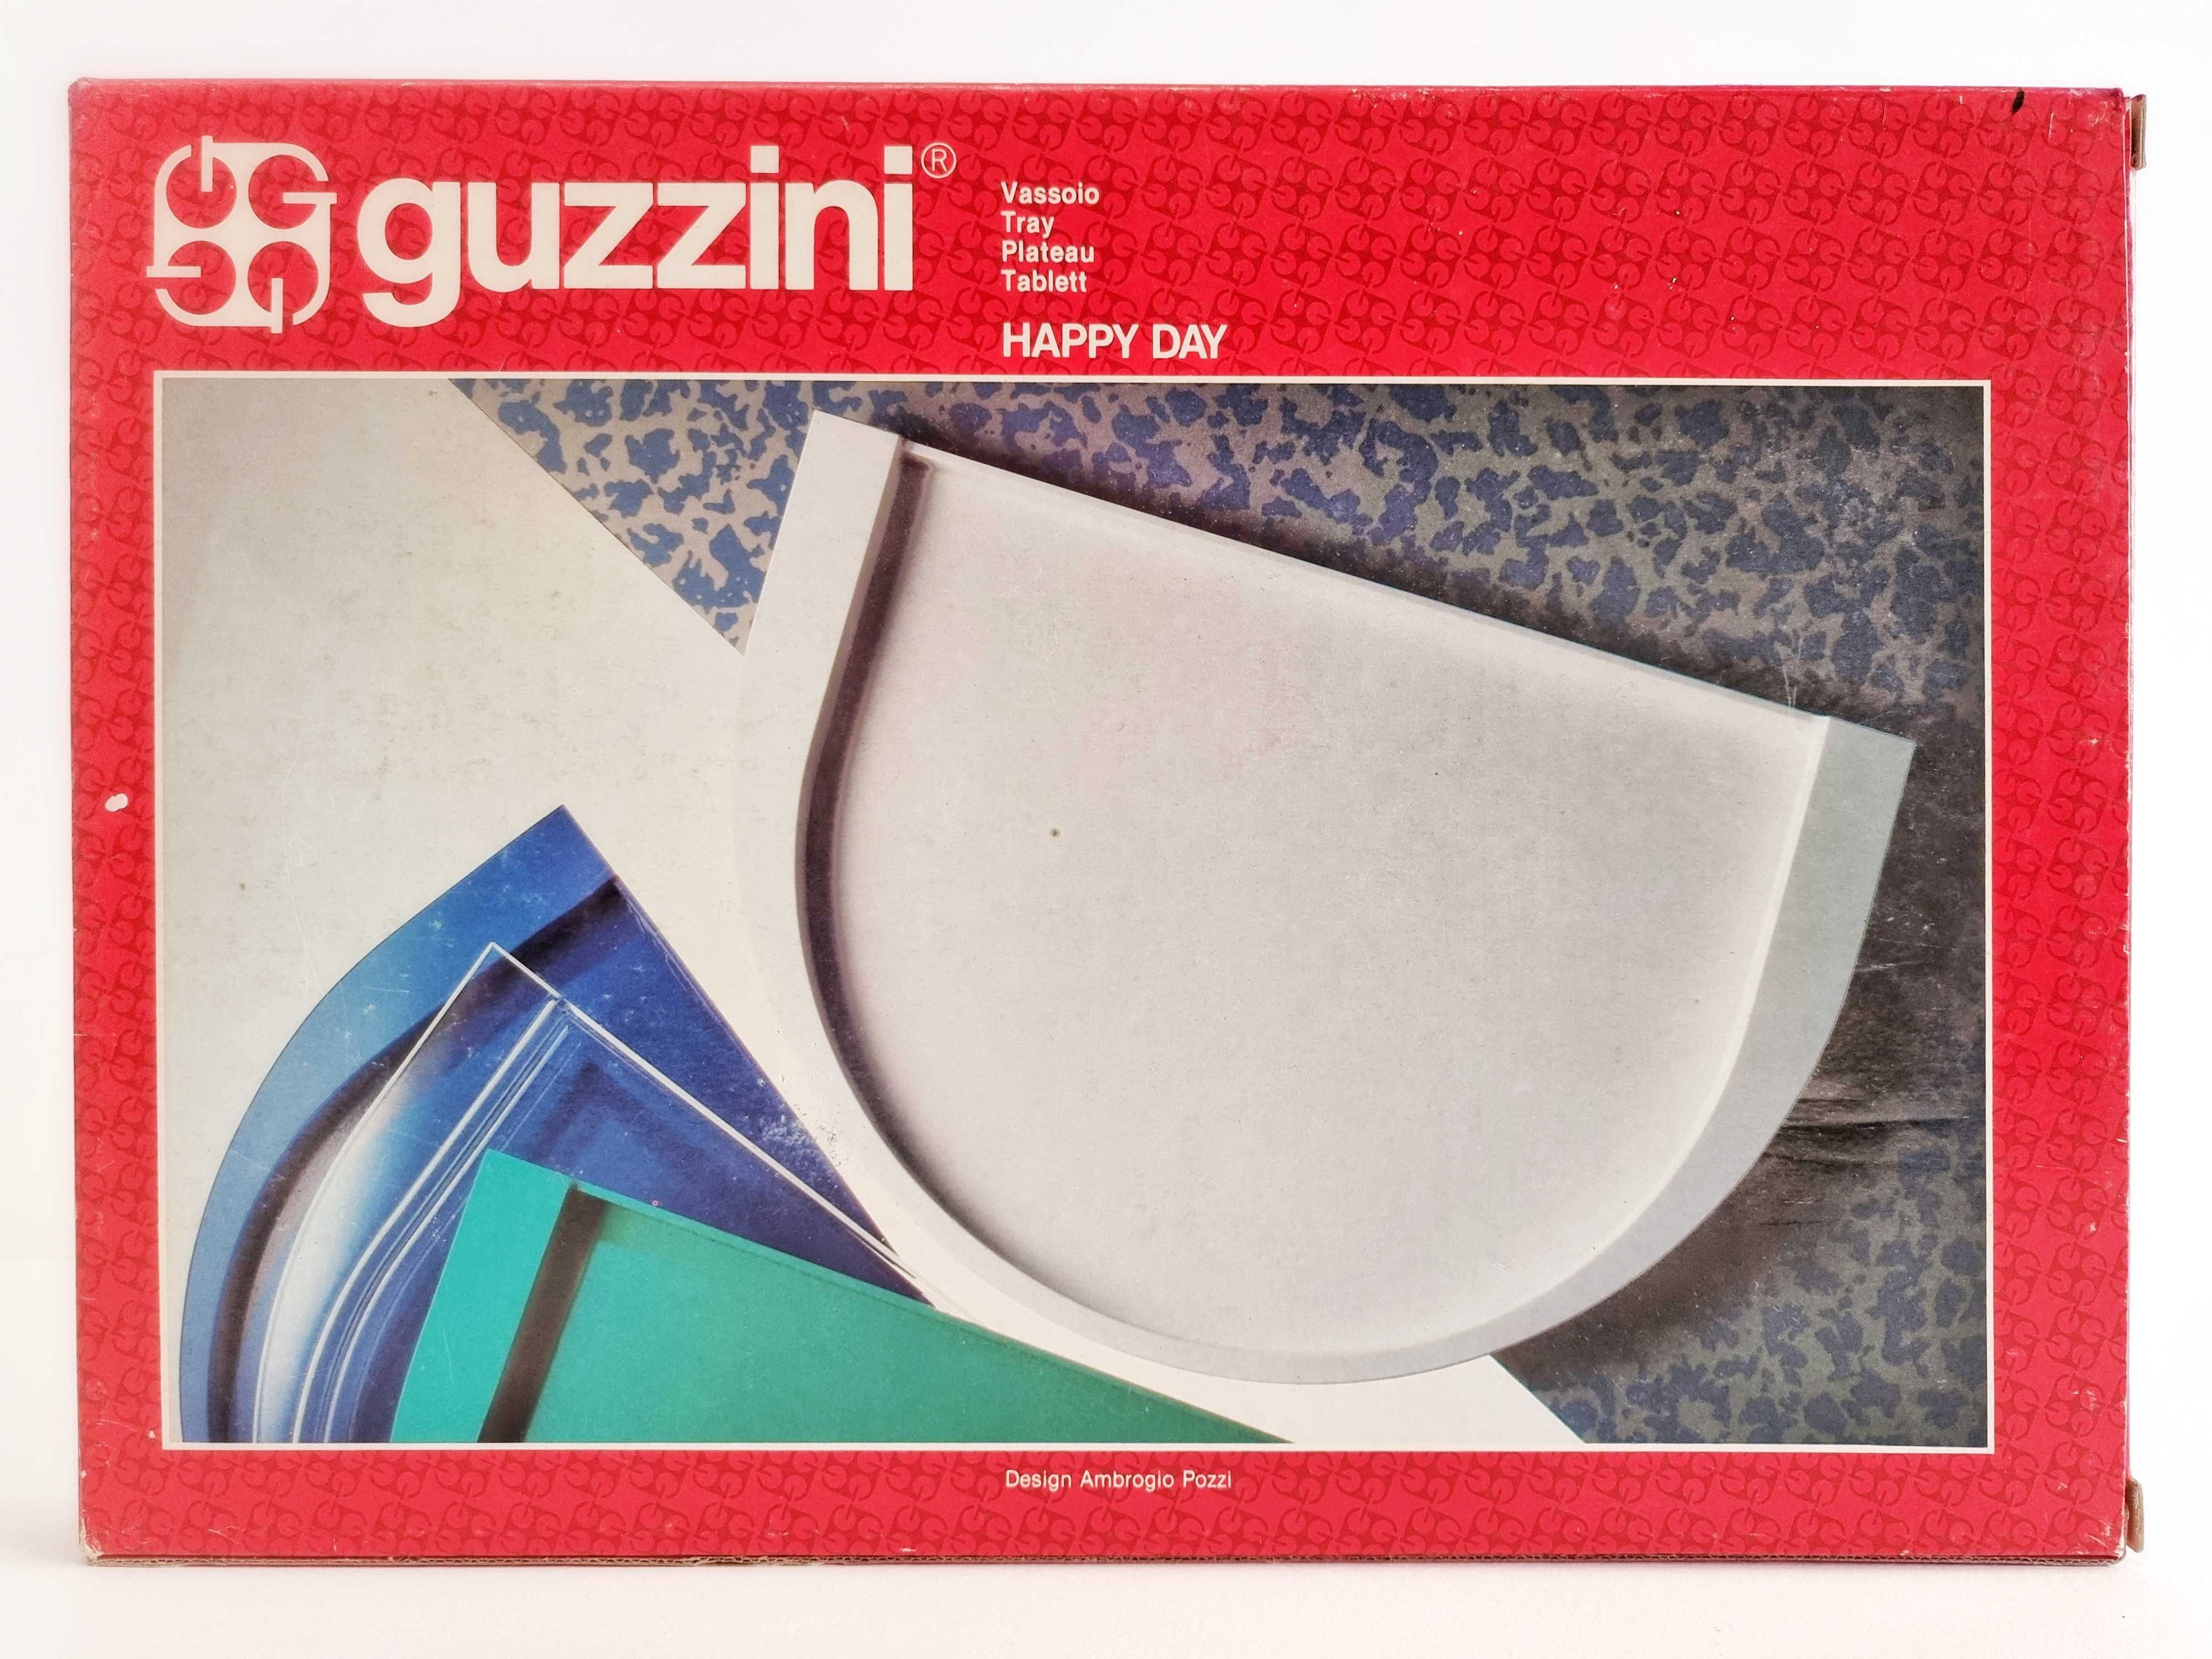 Tabuleiro Guzzini Happy Day Designer Ambrogio Pozzi anos 80